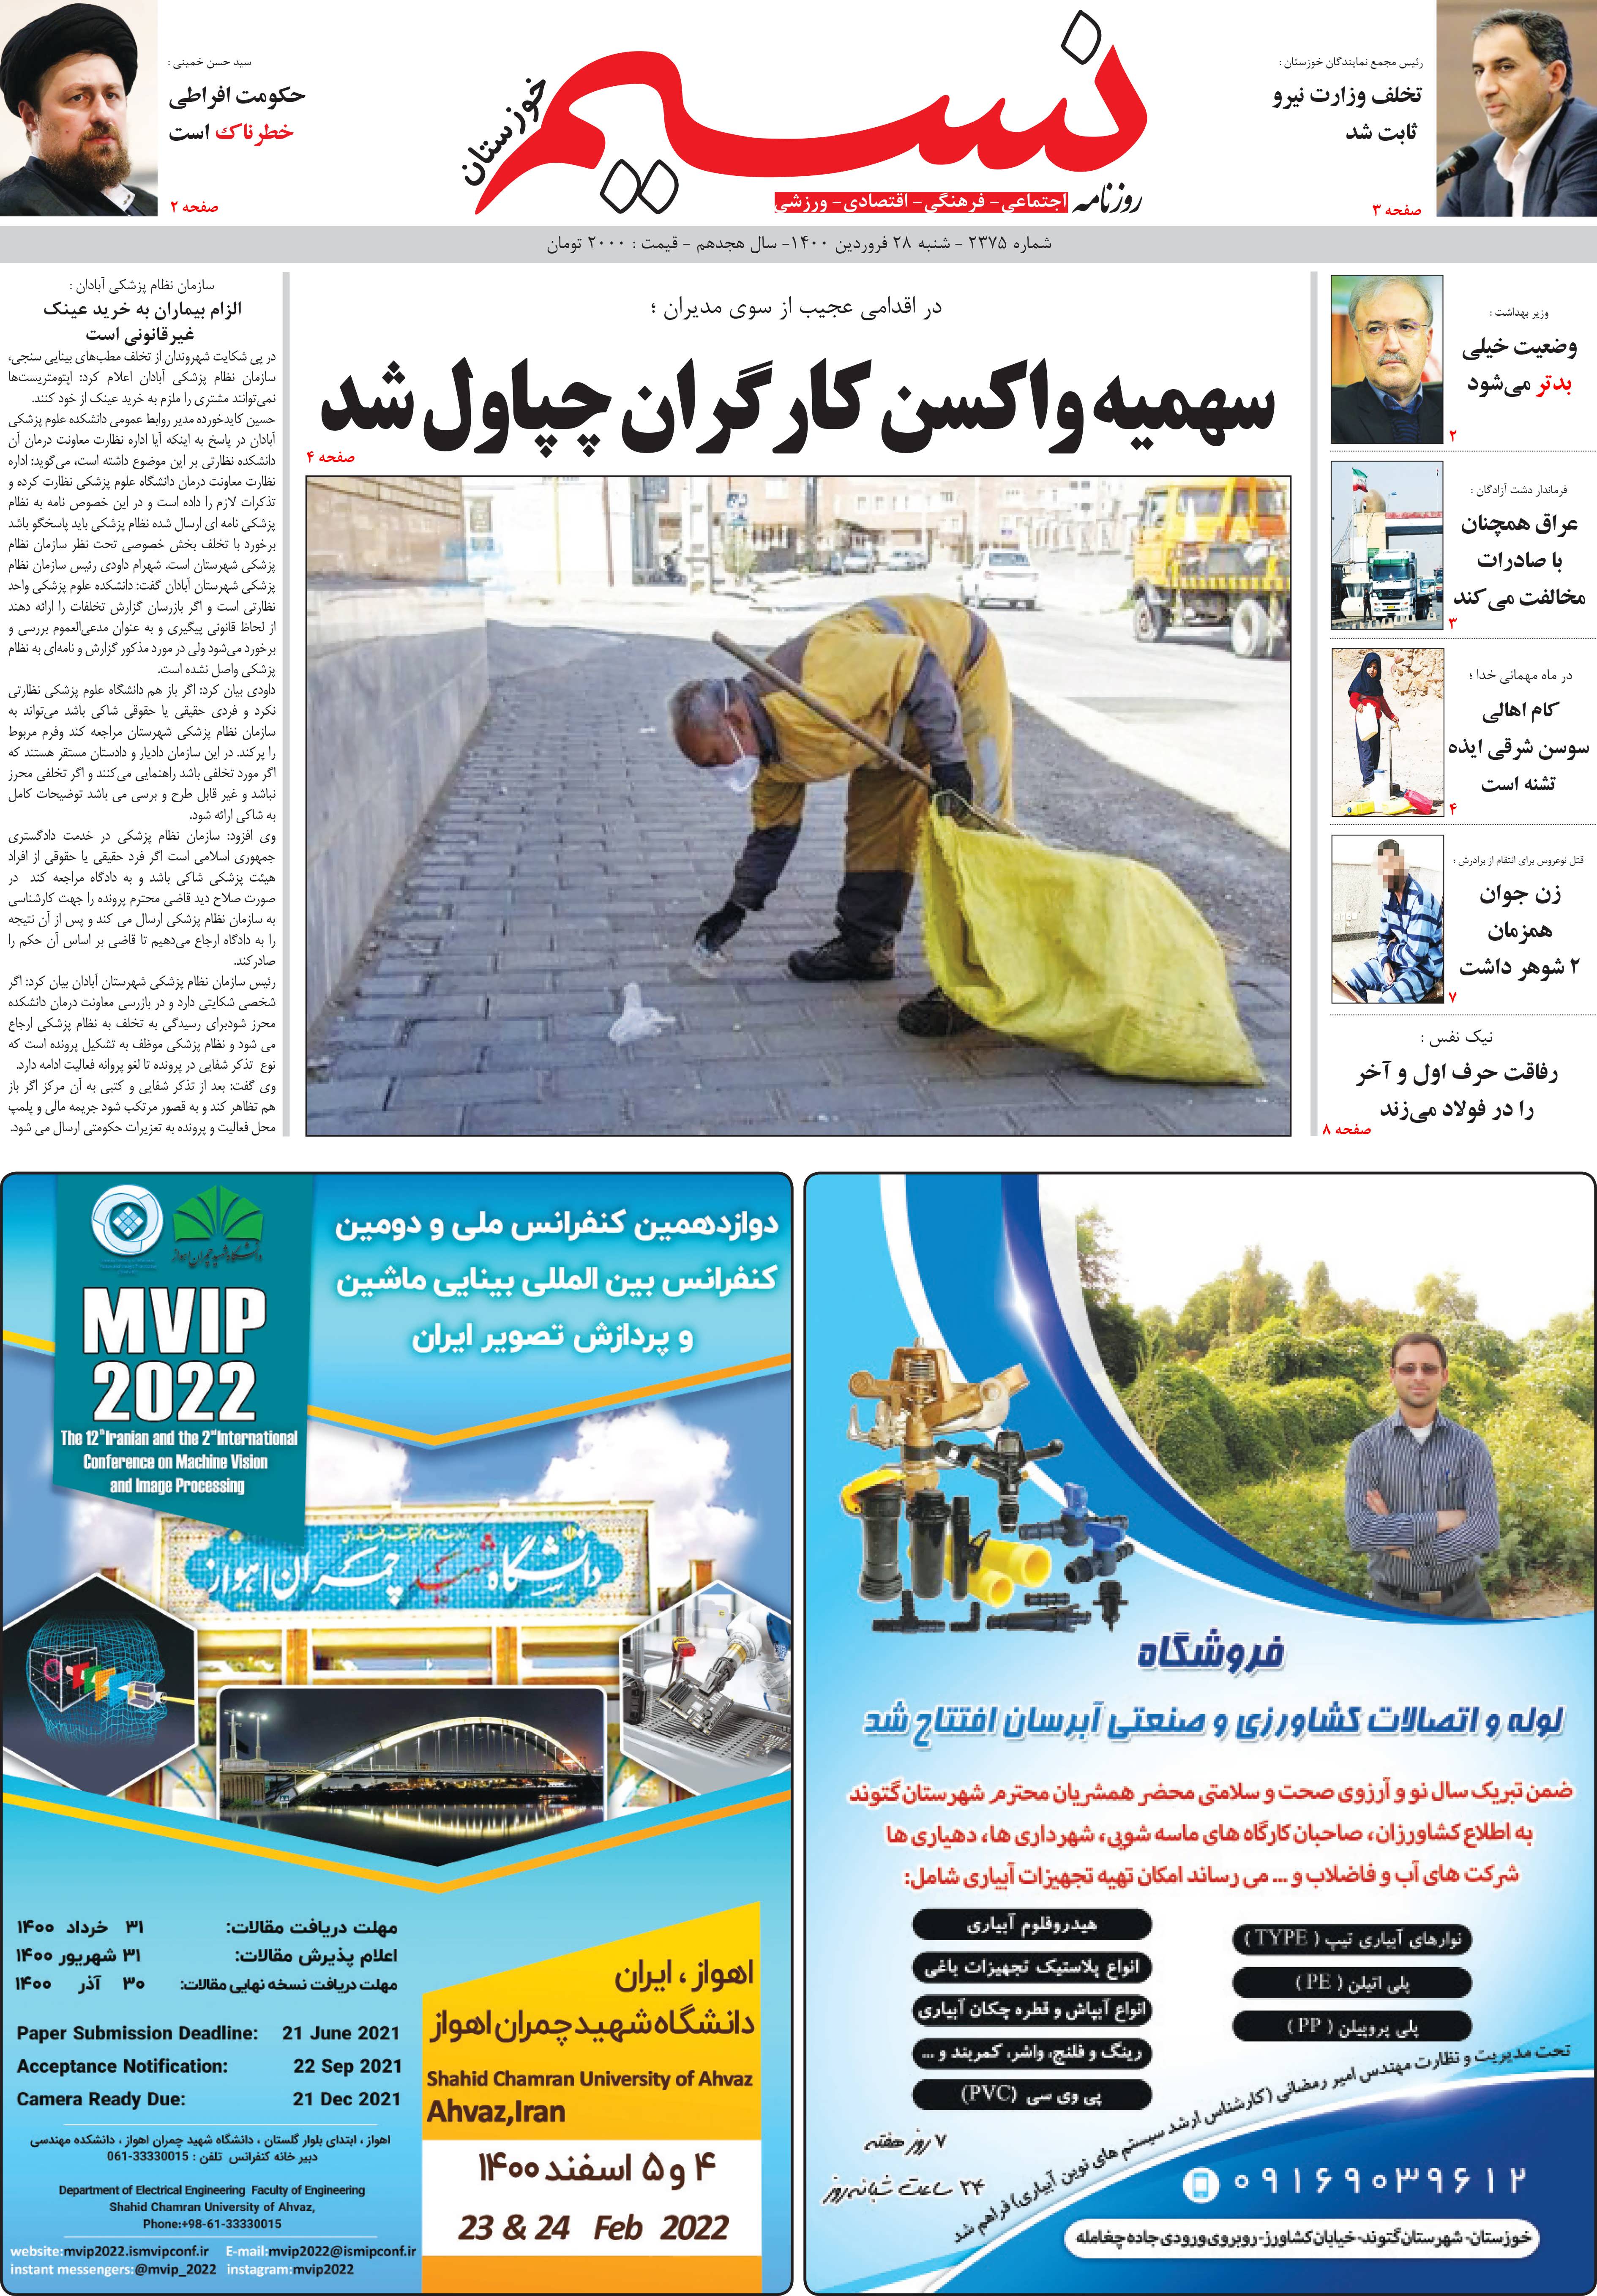 صفحه اصلی روزنامه نسیم شماره 2375 